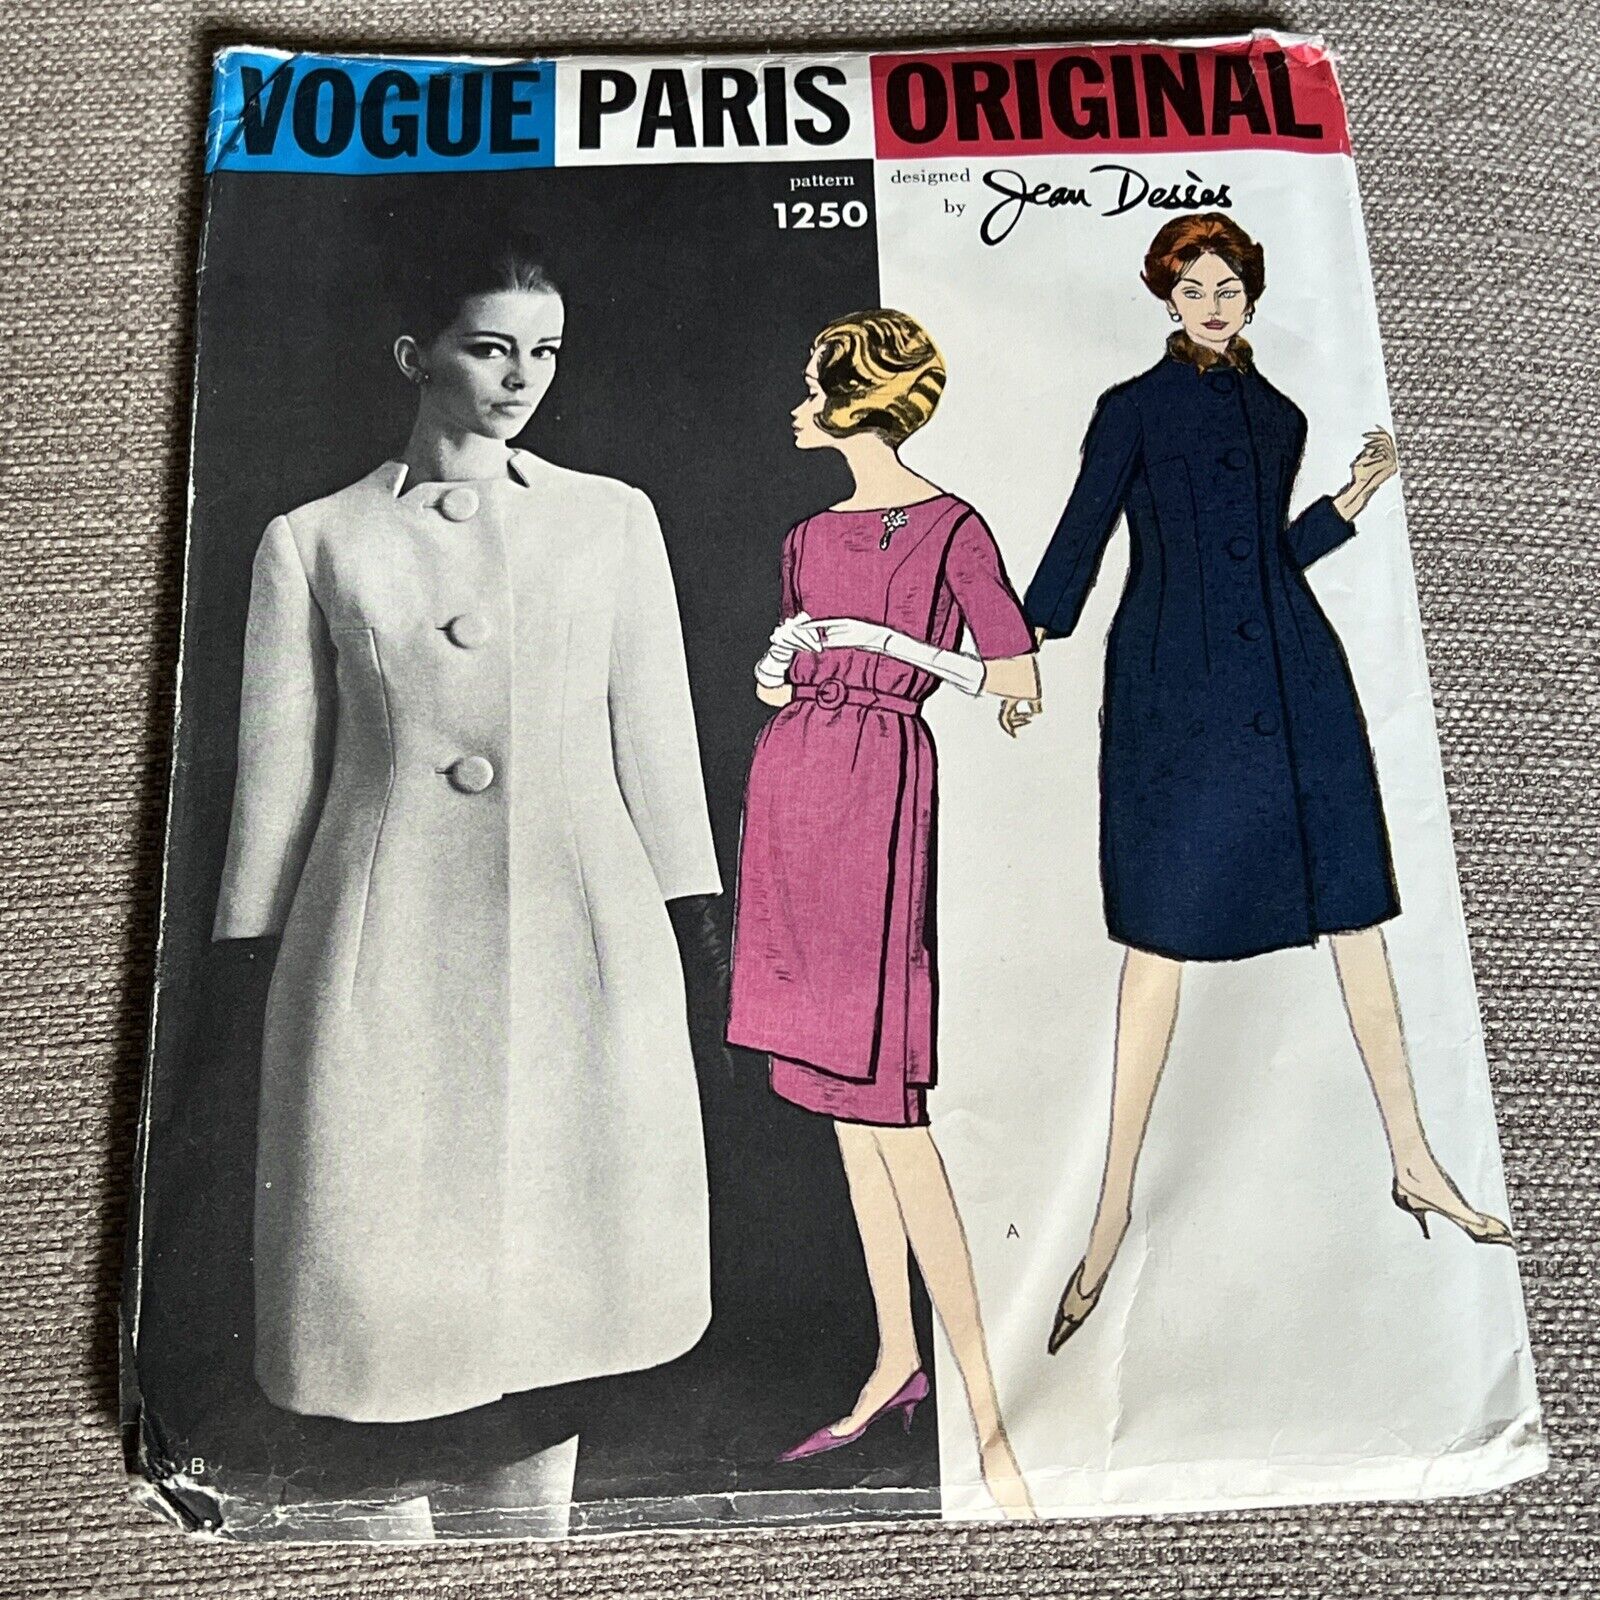 60s VOGUE PARIS ORIGINAL Sewing Pattern JEAN DESSES 1250 UNCUT Dress Coat Sz 14